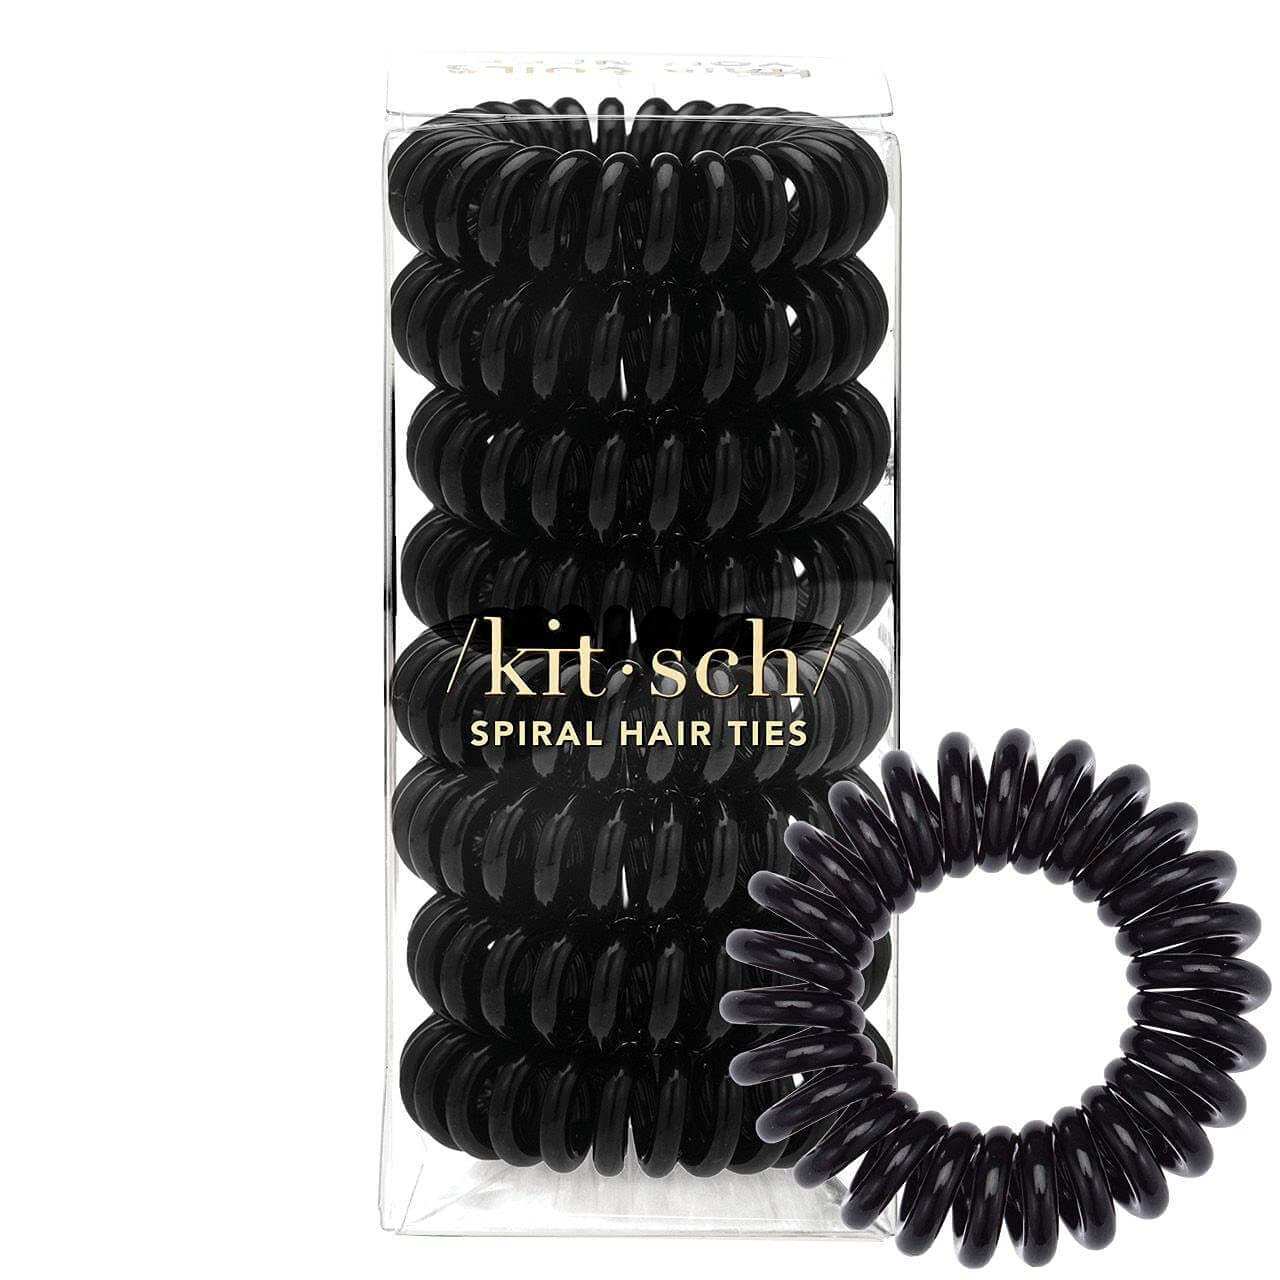 Kitsch’s Spiral Hair Tie